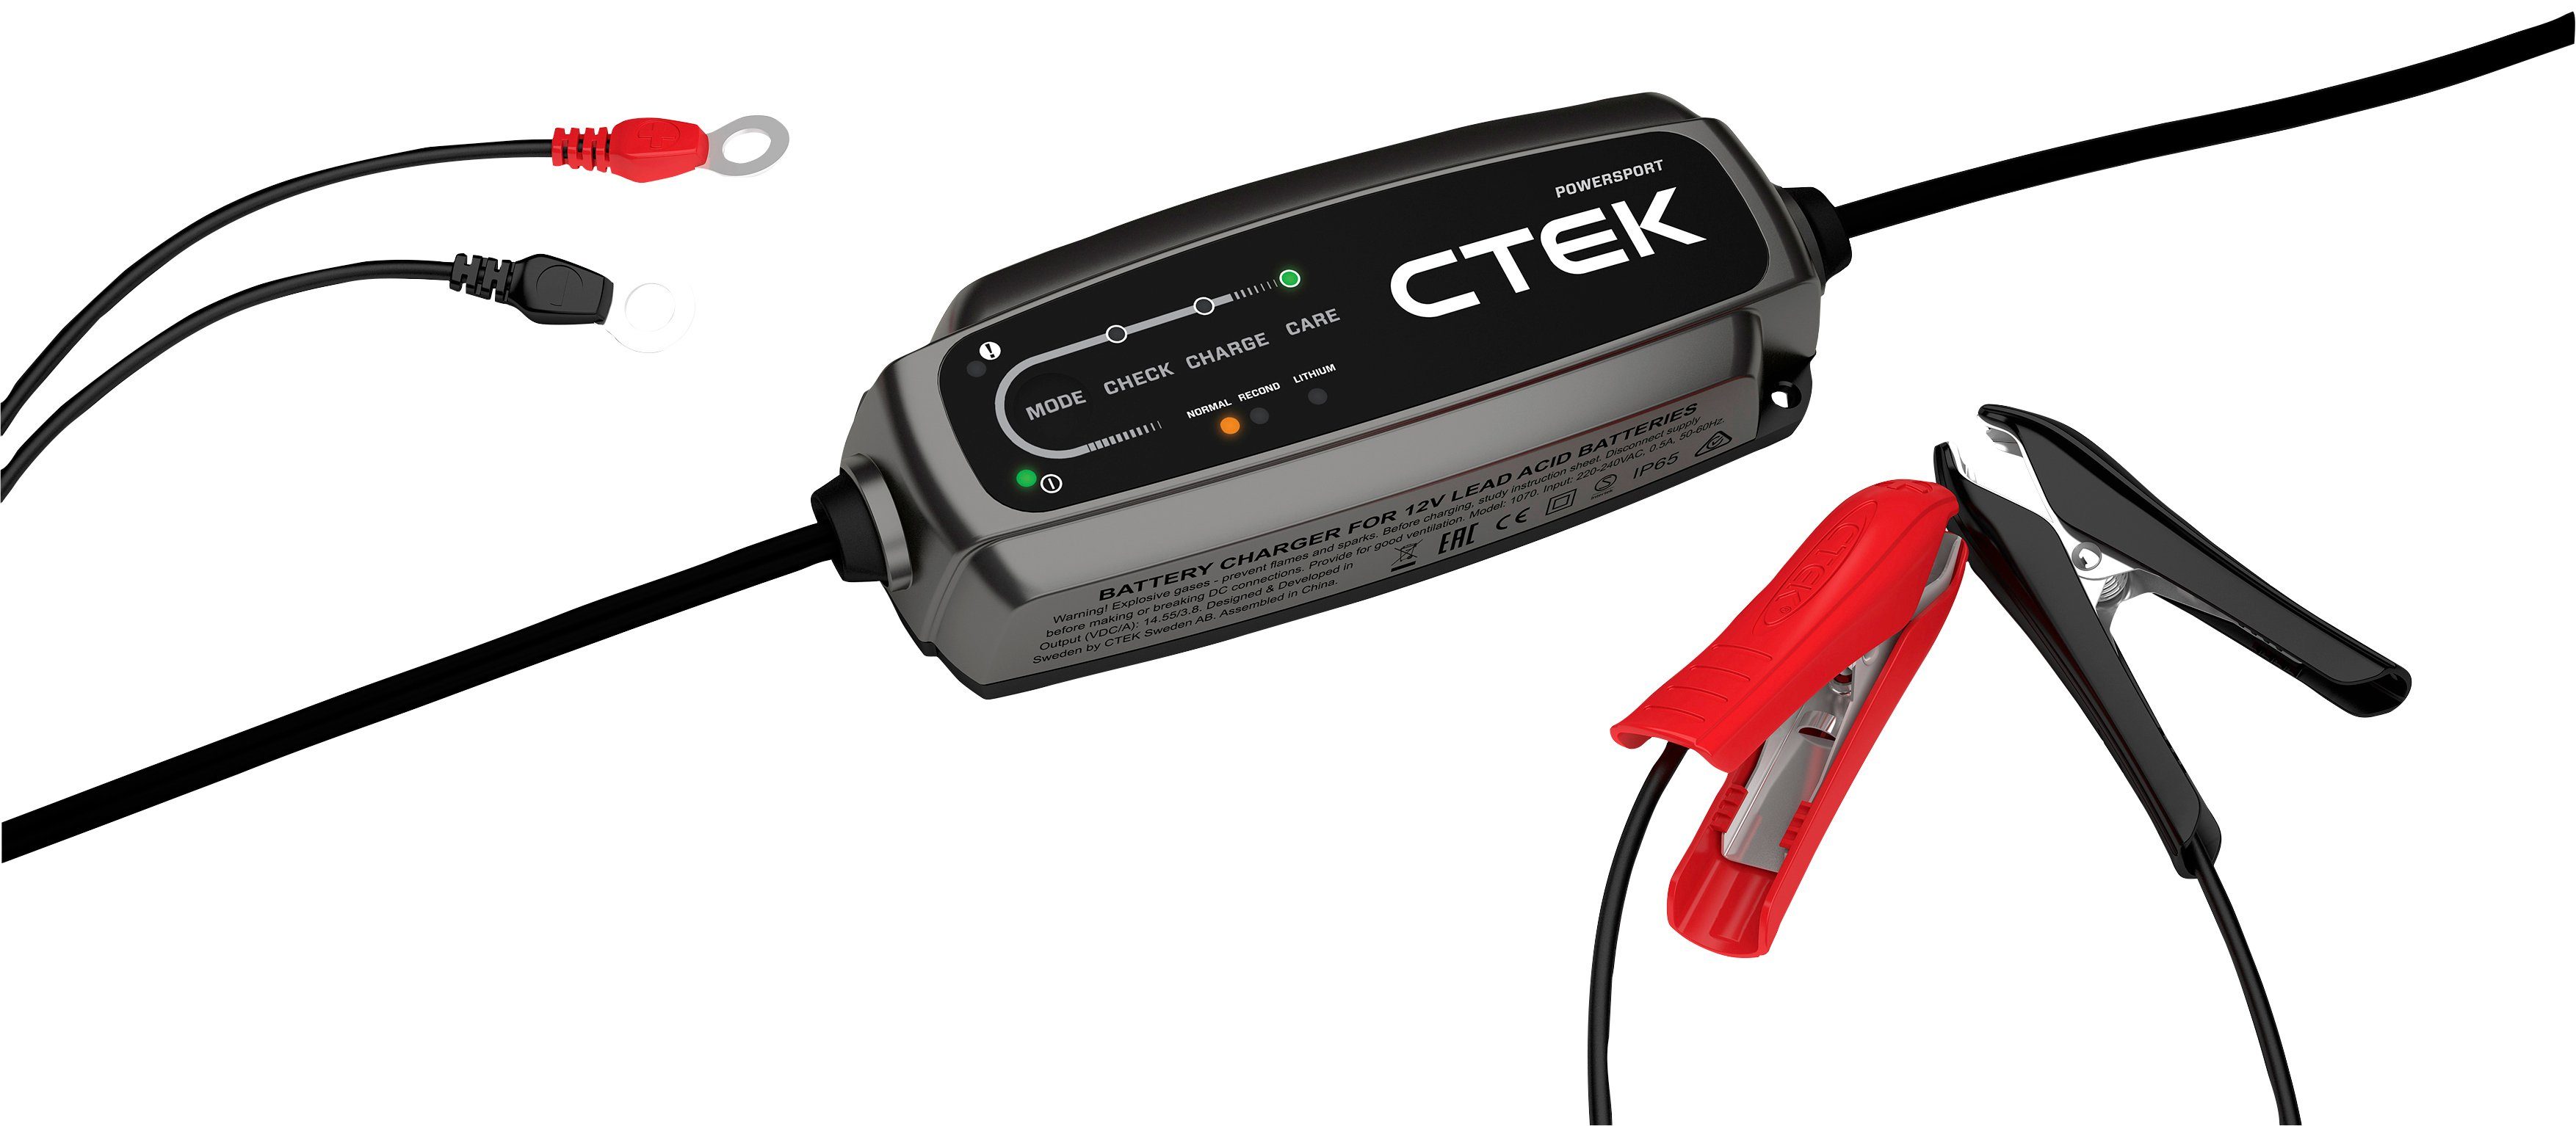 CTEK Batterie-Ladegerät »MXS 5.0 Test & Charge«, Spannung, Startleistung  und Leistungsverhalten der Lichtmaschine